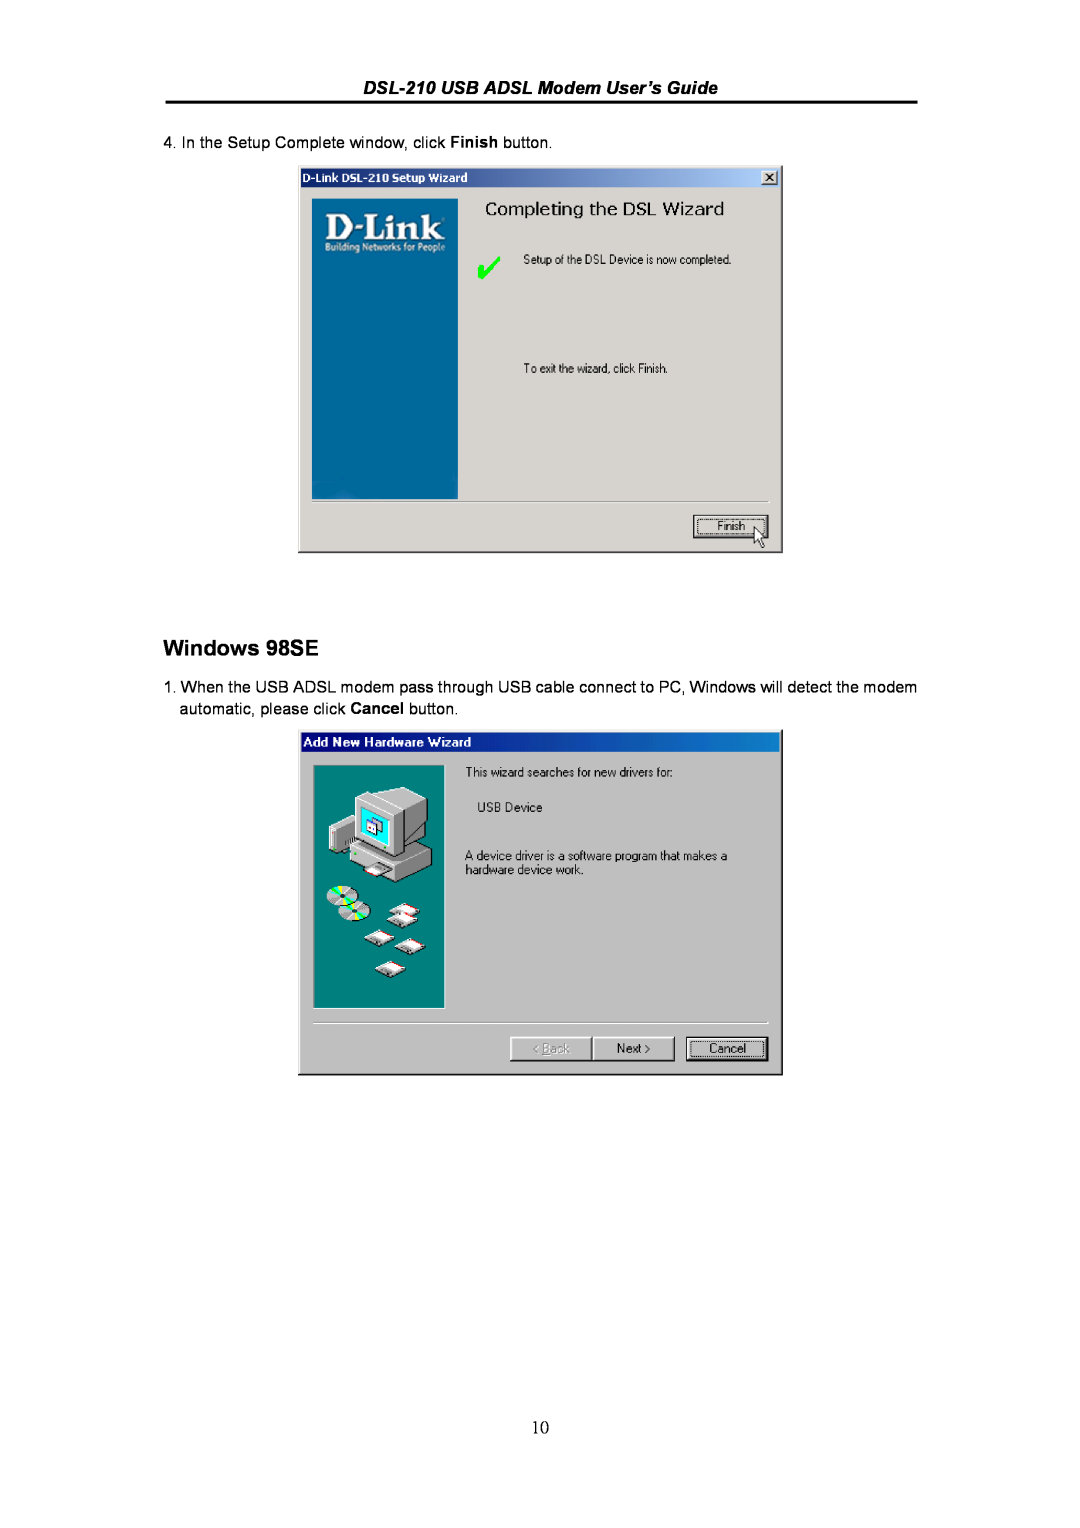 D-Link manual Windows 98SE, DSL-210 USB ADSL Modem User’s Guide 